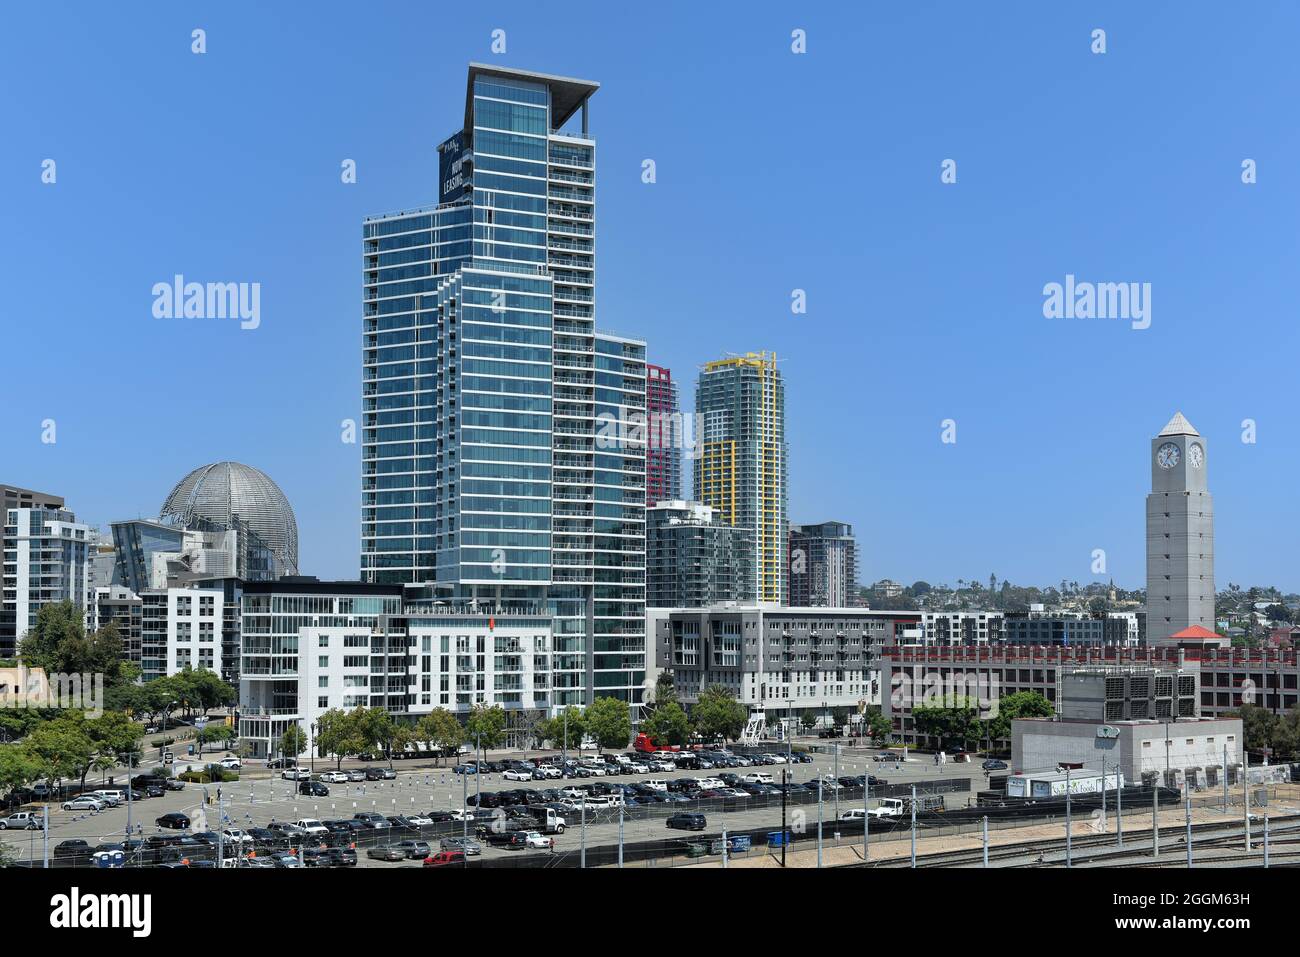 SAN DIEGO, KALIFORNIEN - 25. AUG 2021: Clock Tower an der MTS Station and Park 12 - The Collection, haustierfreundliches Apartmentgebäude. Stockfoto